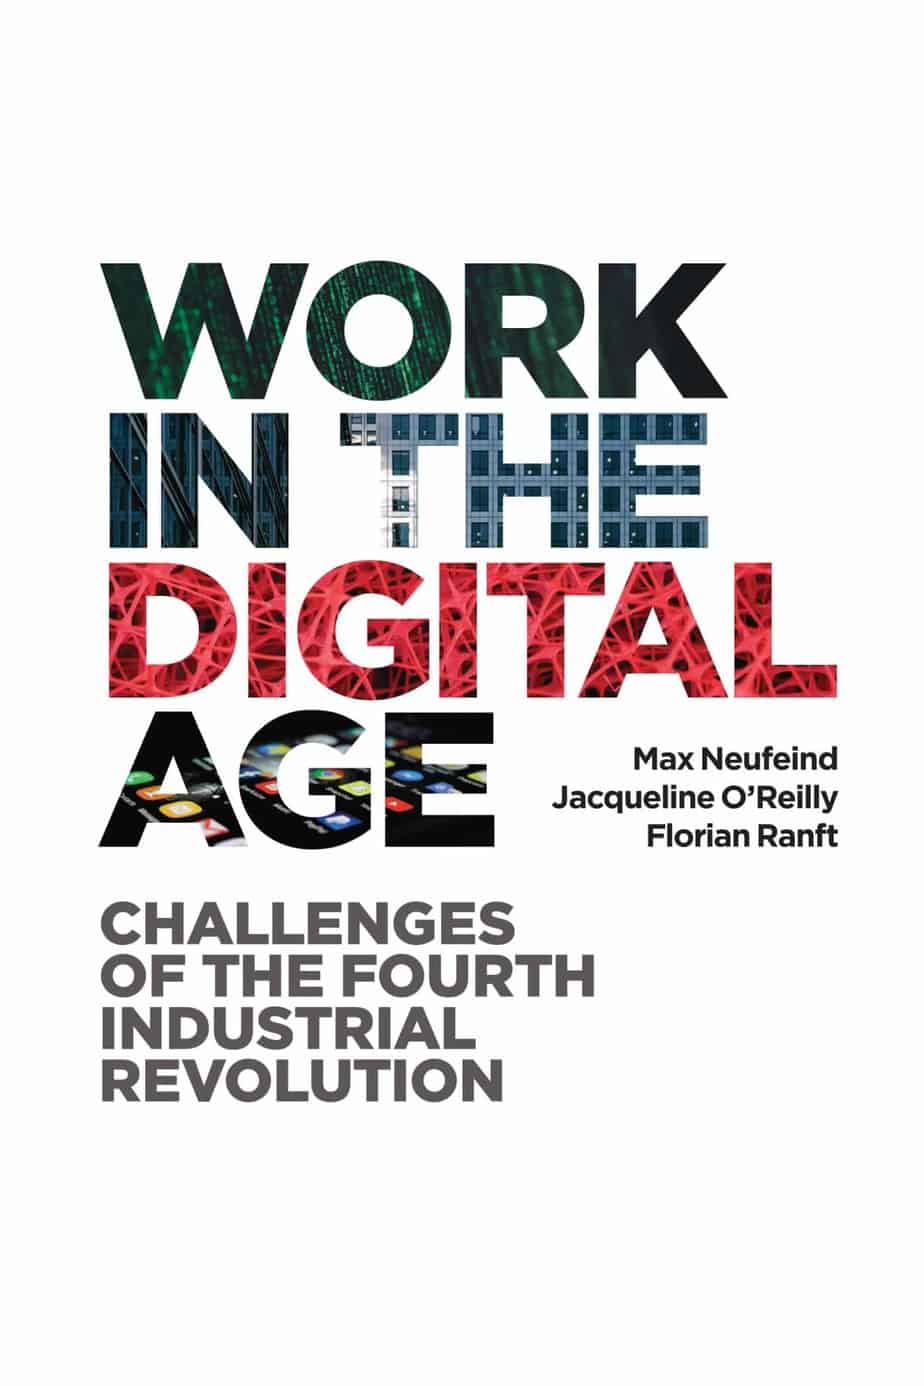 The Digital Age: A Progressive Future of Work